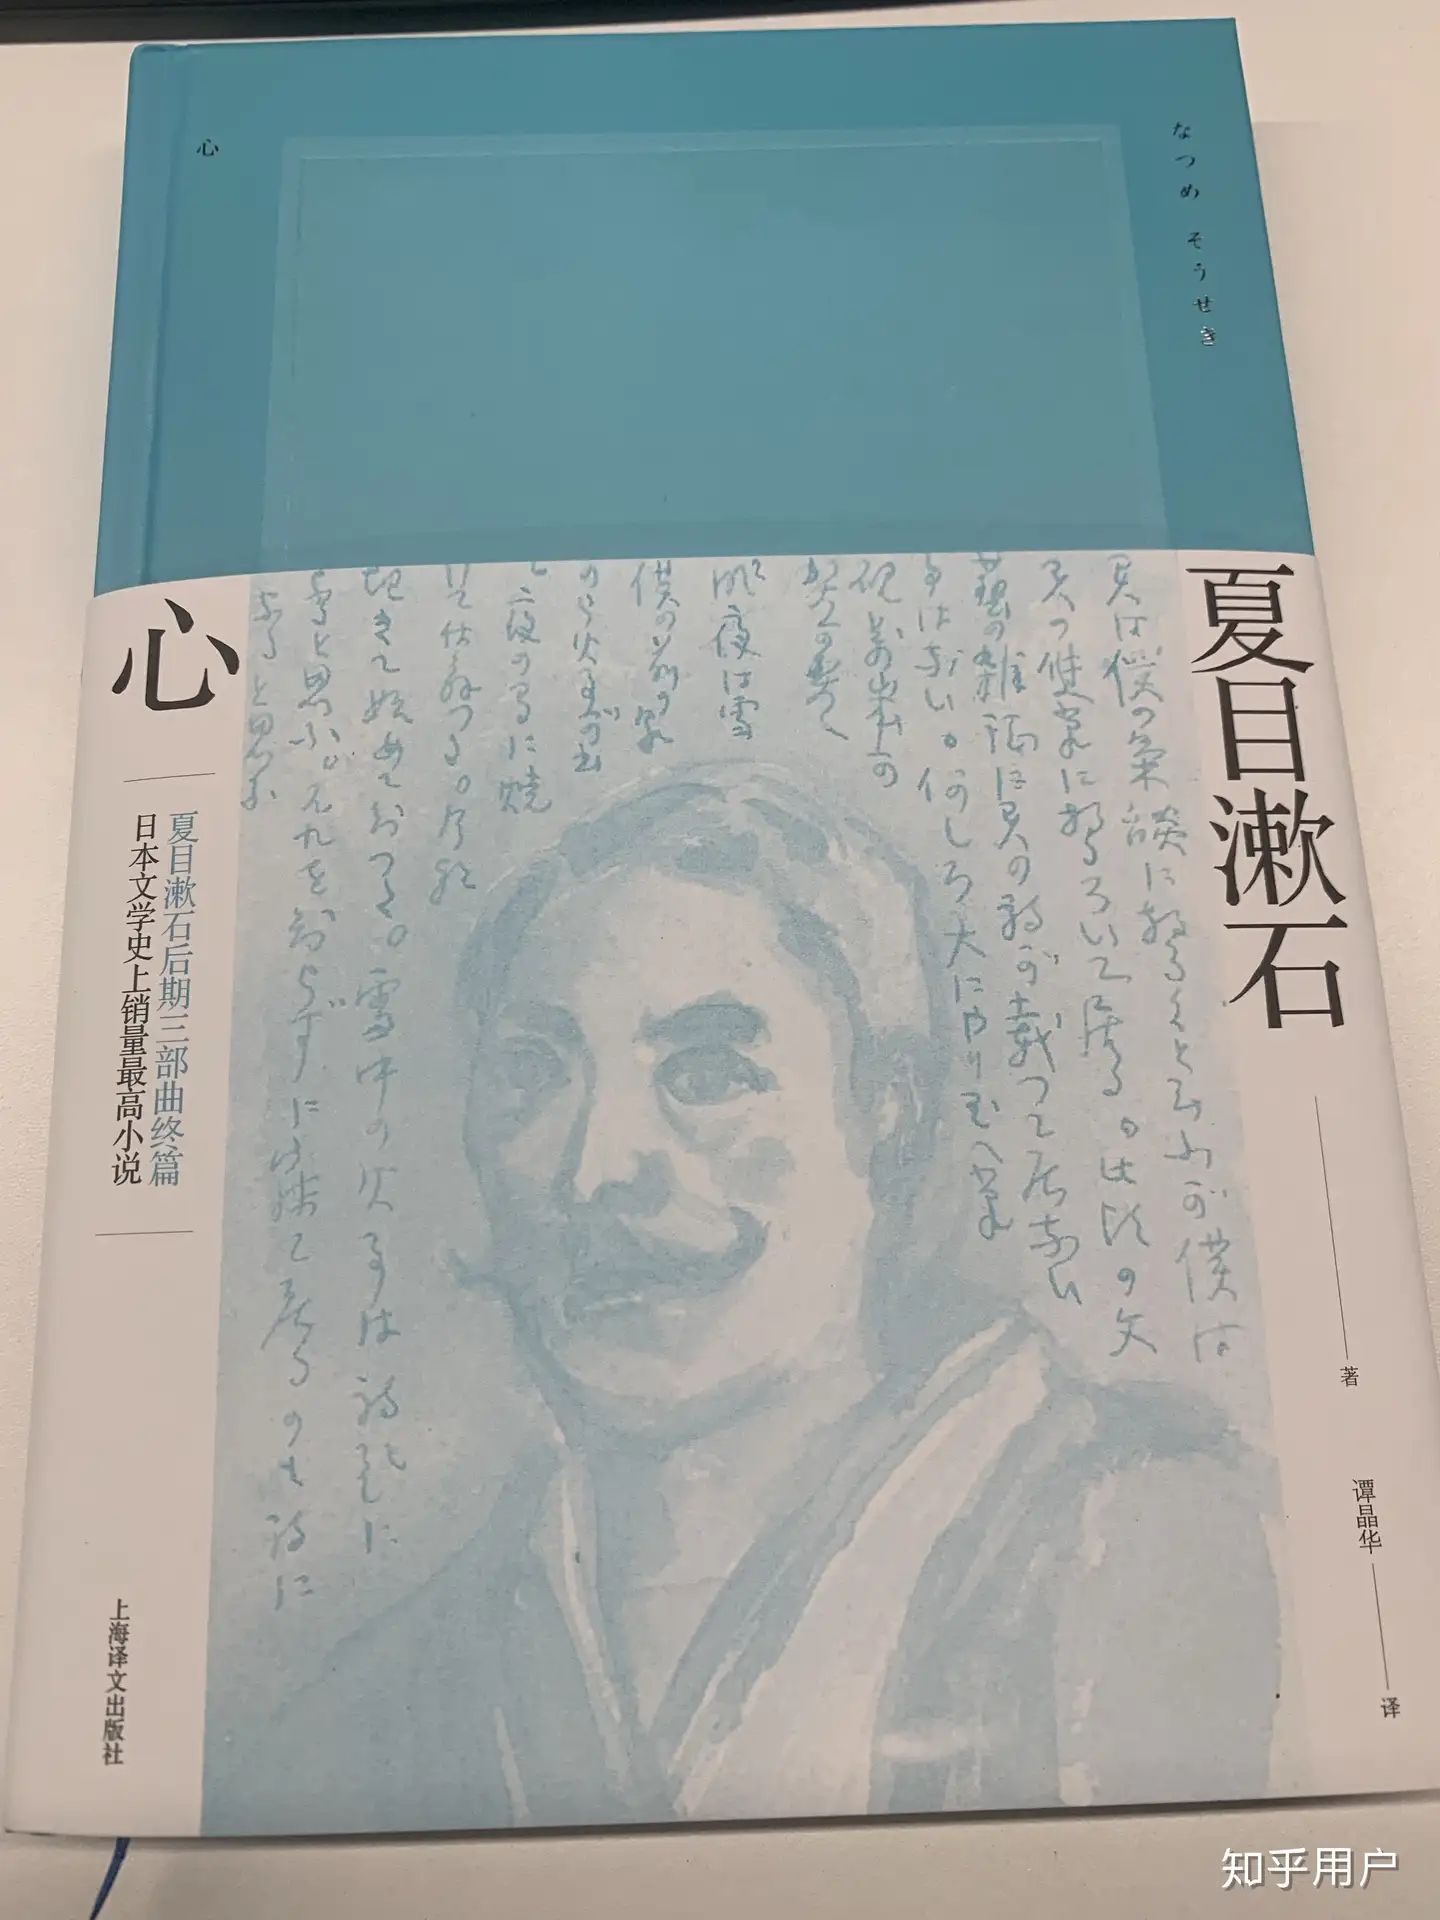 如何评价夏目漱石和他的小说《心》？ - 知乎